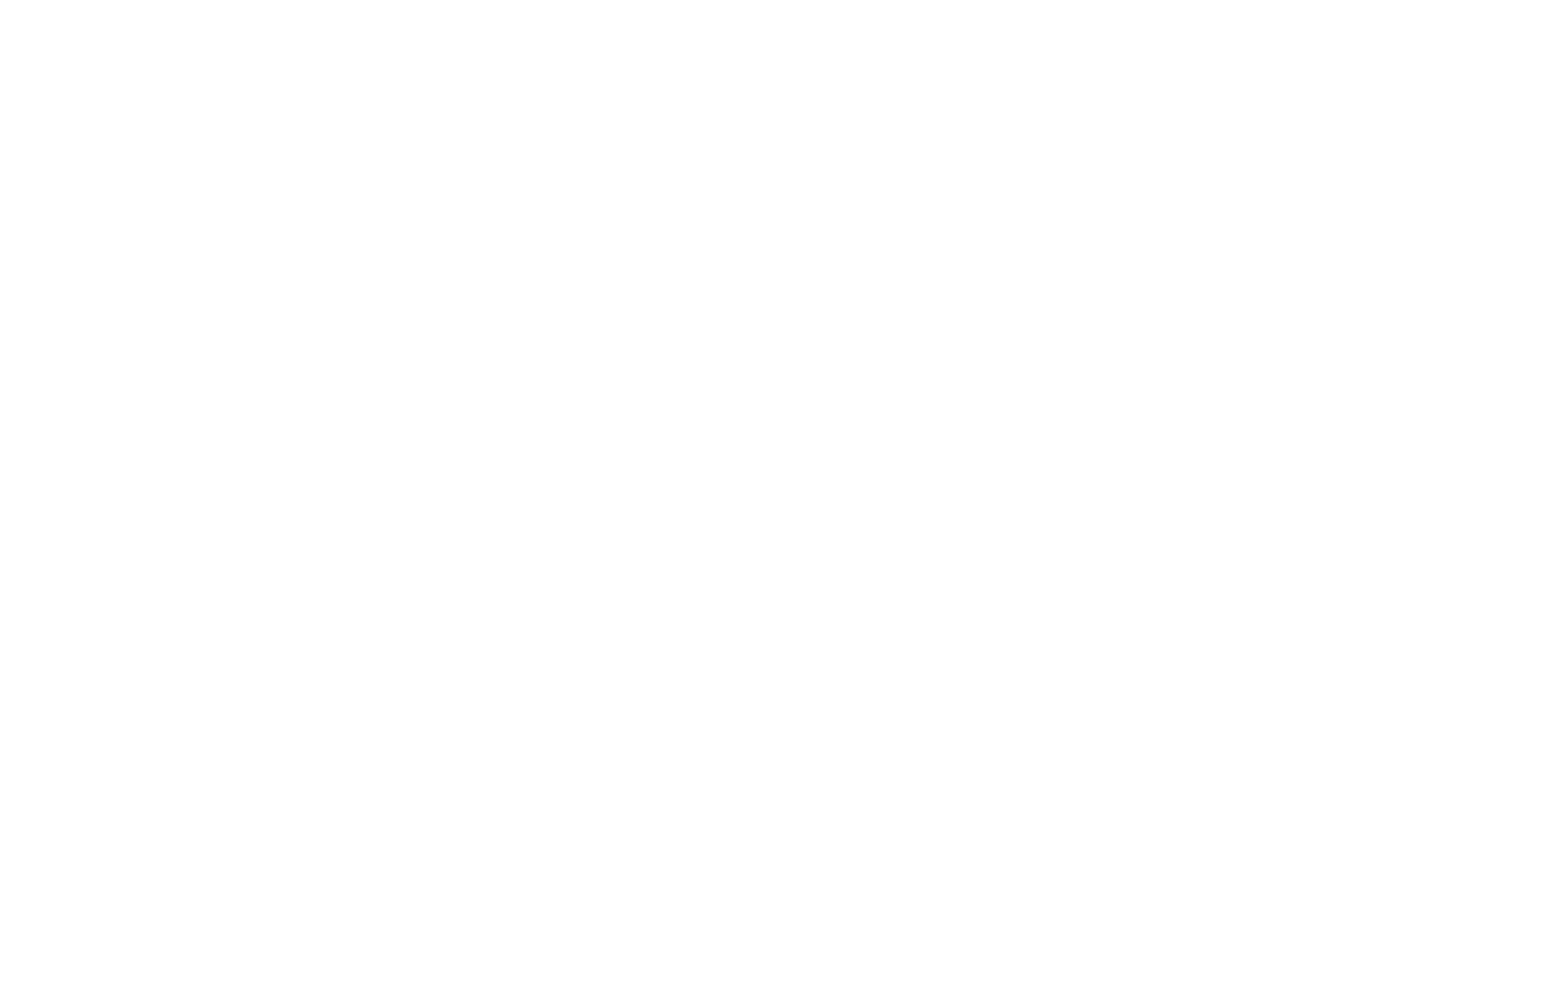 Community Bank System logo pour fonds sombres (PNG transparent)